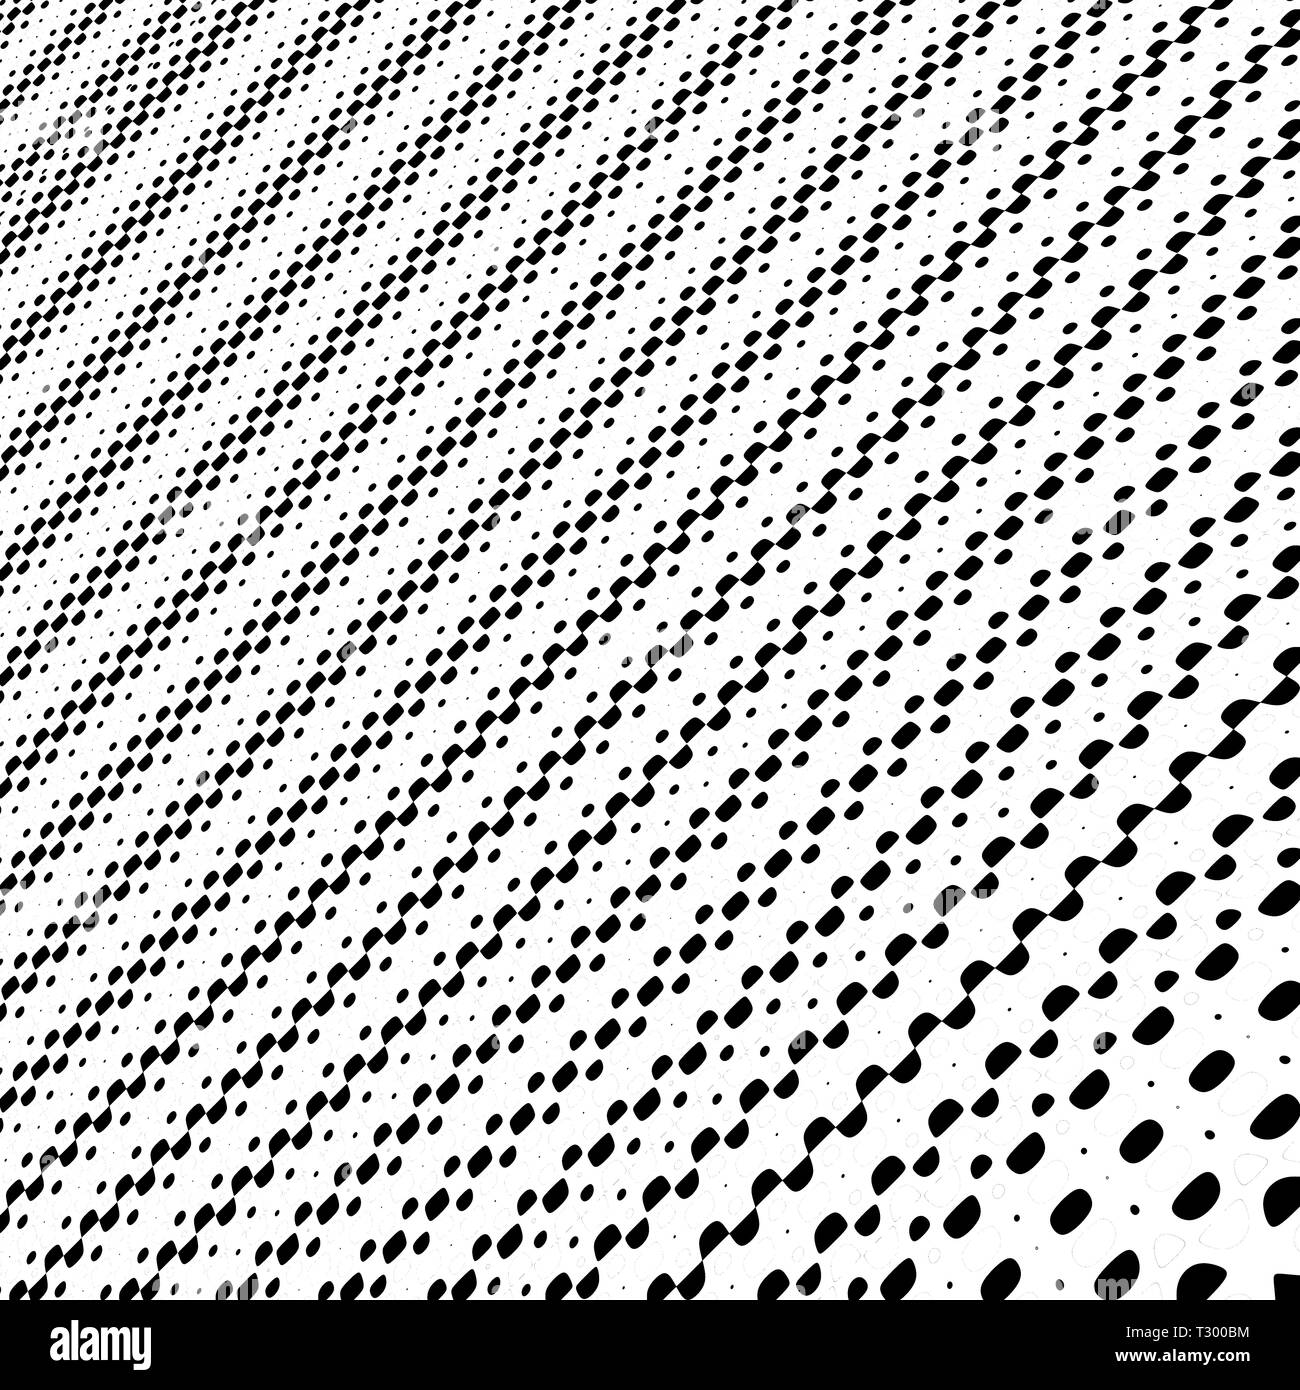 Computer Kunst: Zeichnen von Punkten und Kreisen in unterschiedlicher Größe und Farbe bilden eine perspectivic oder symmetrischen Bild Stockfoto